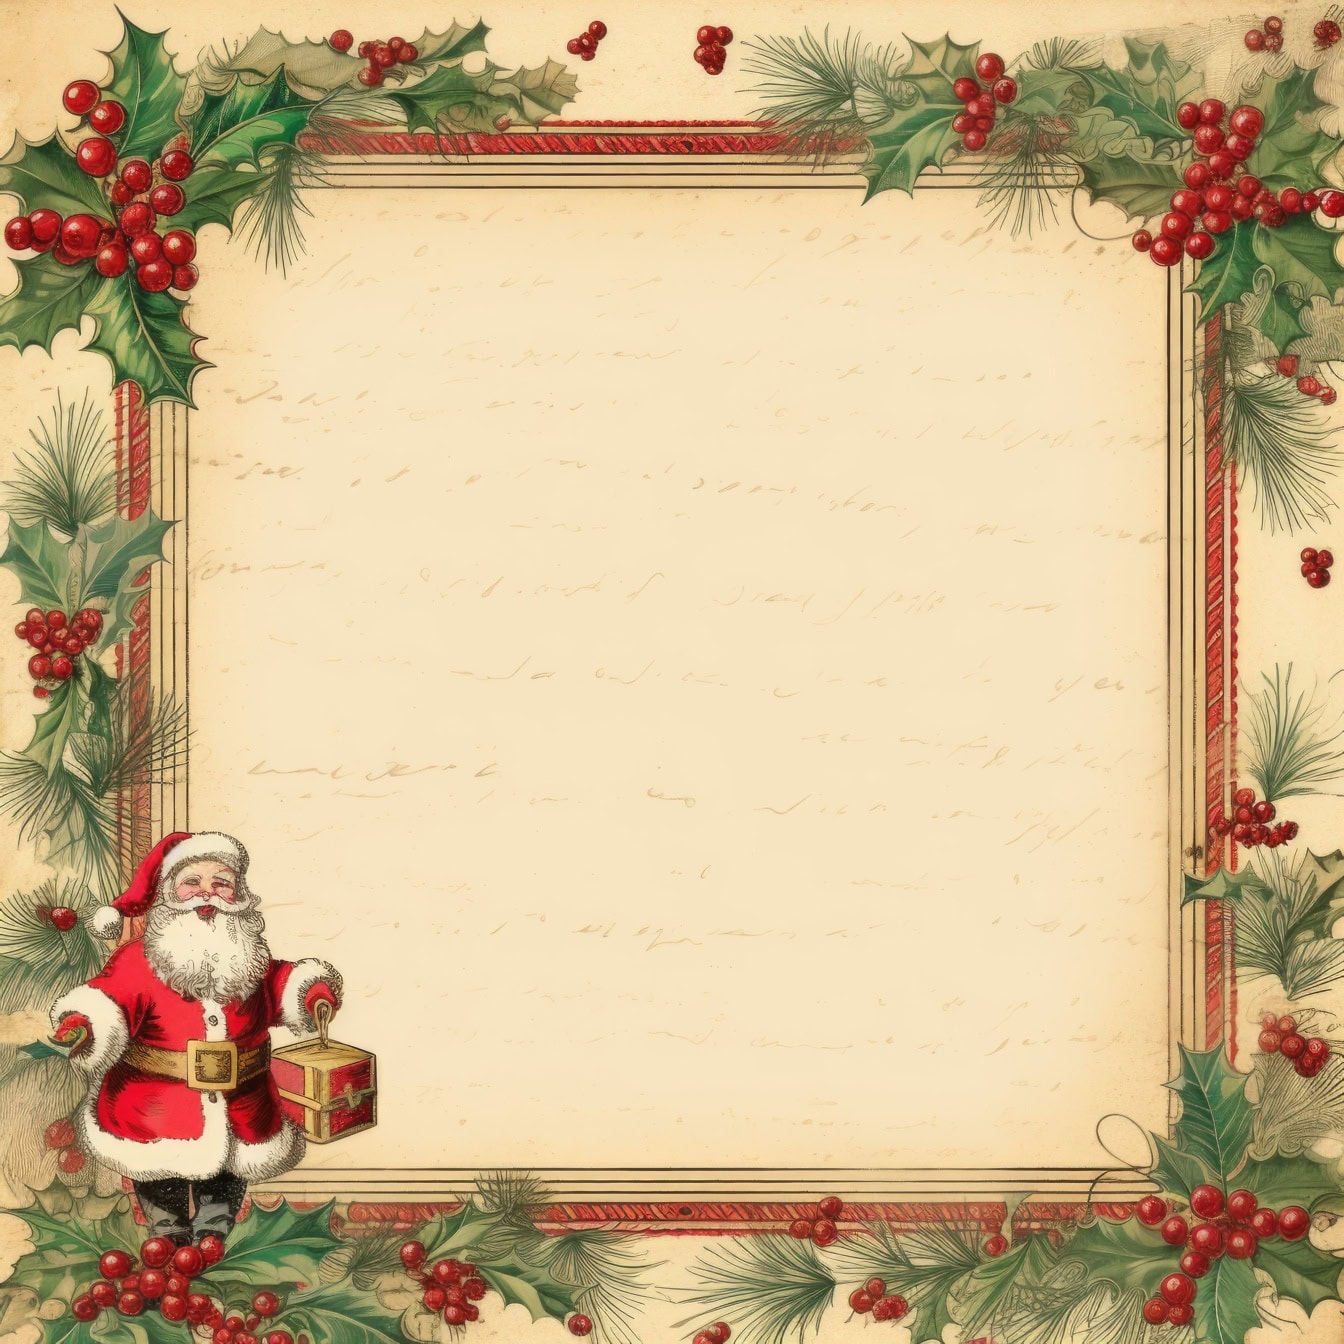 Tradiční šablona vánočního přání v retro stylu s rámečkem z cesmínového věnce a se Santa Clausem